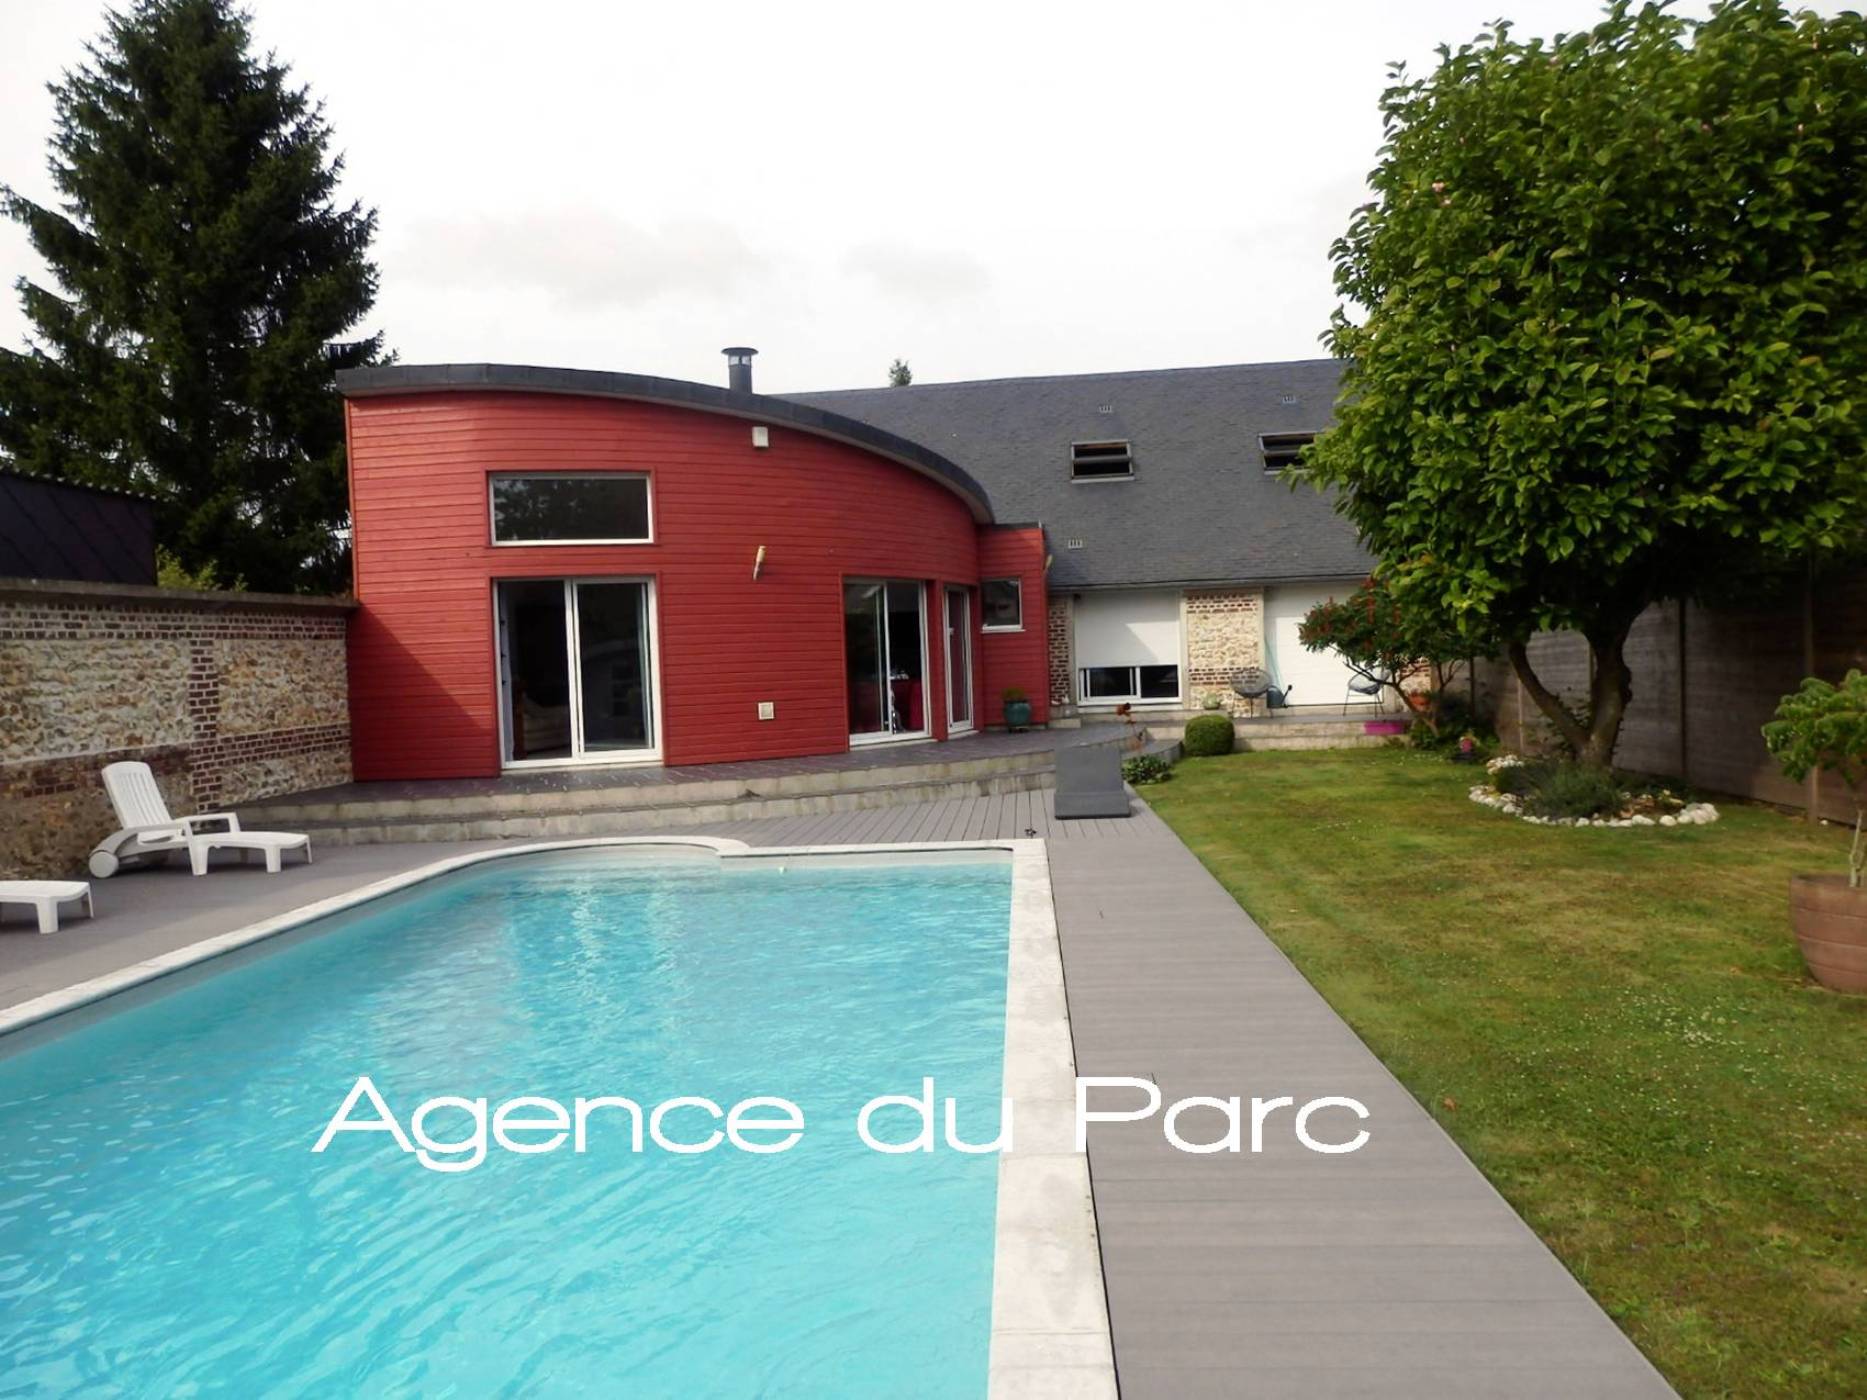 Achat d'une maison contemporaine en très bon état avec une piscine à 30 mn de ROUEN, dans un bourg tous commerces, en Normandie